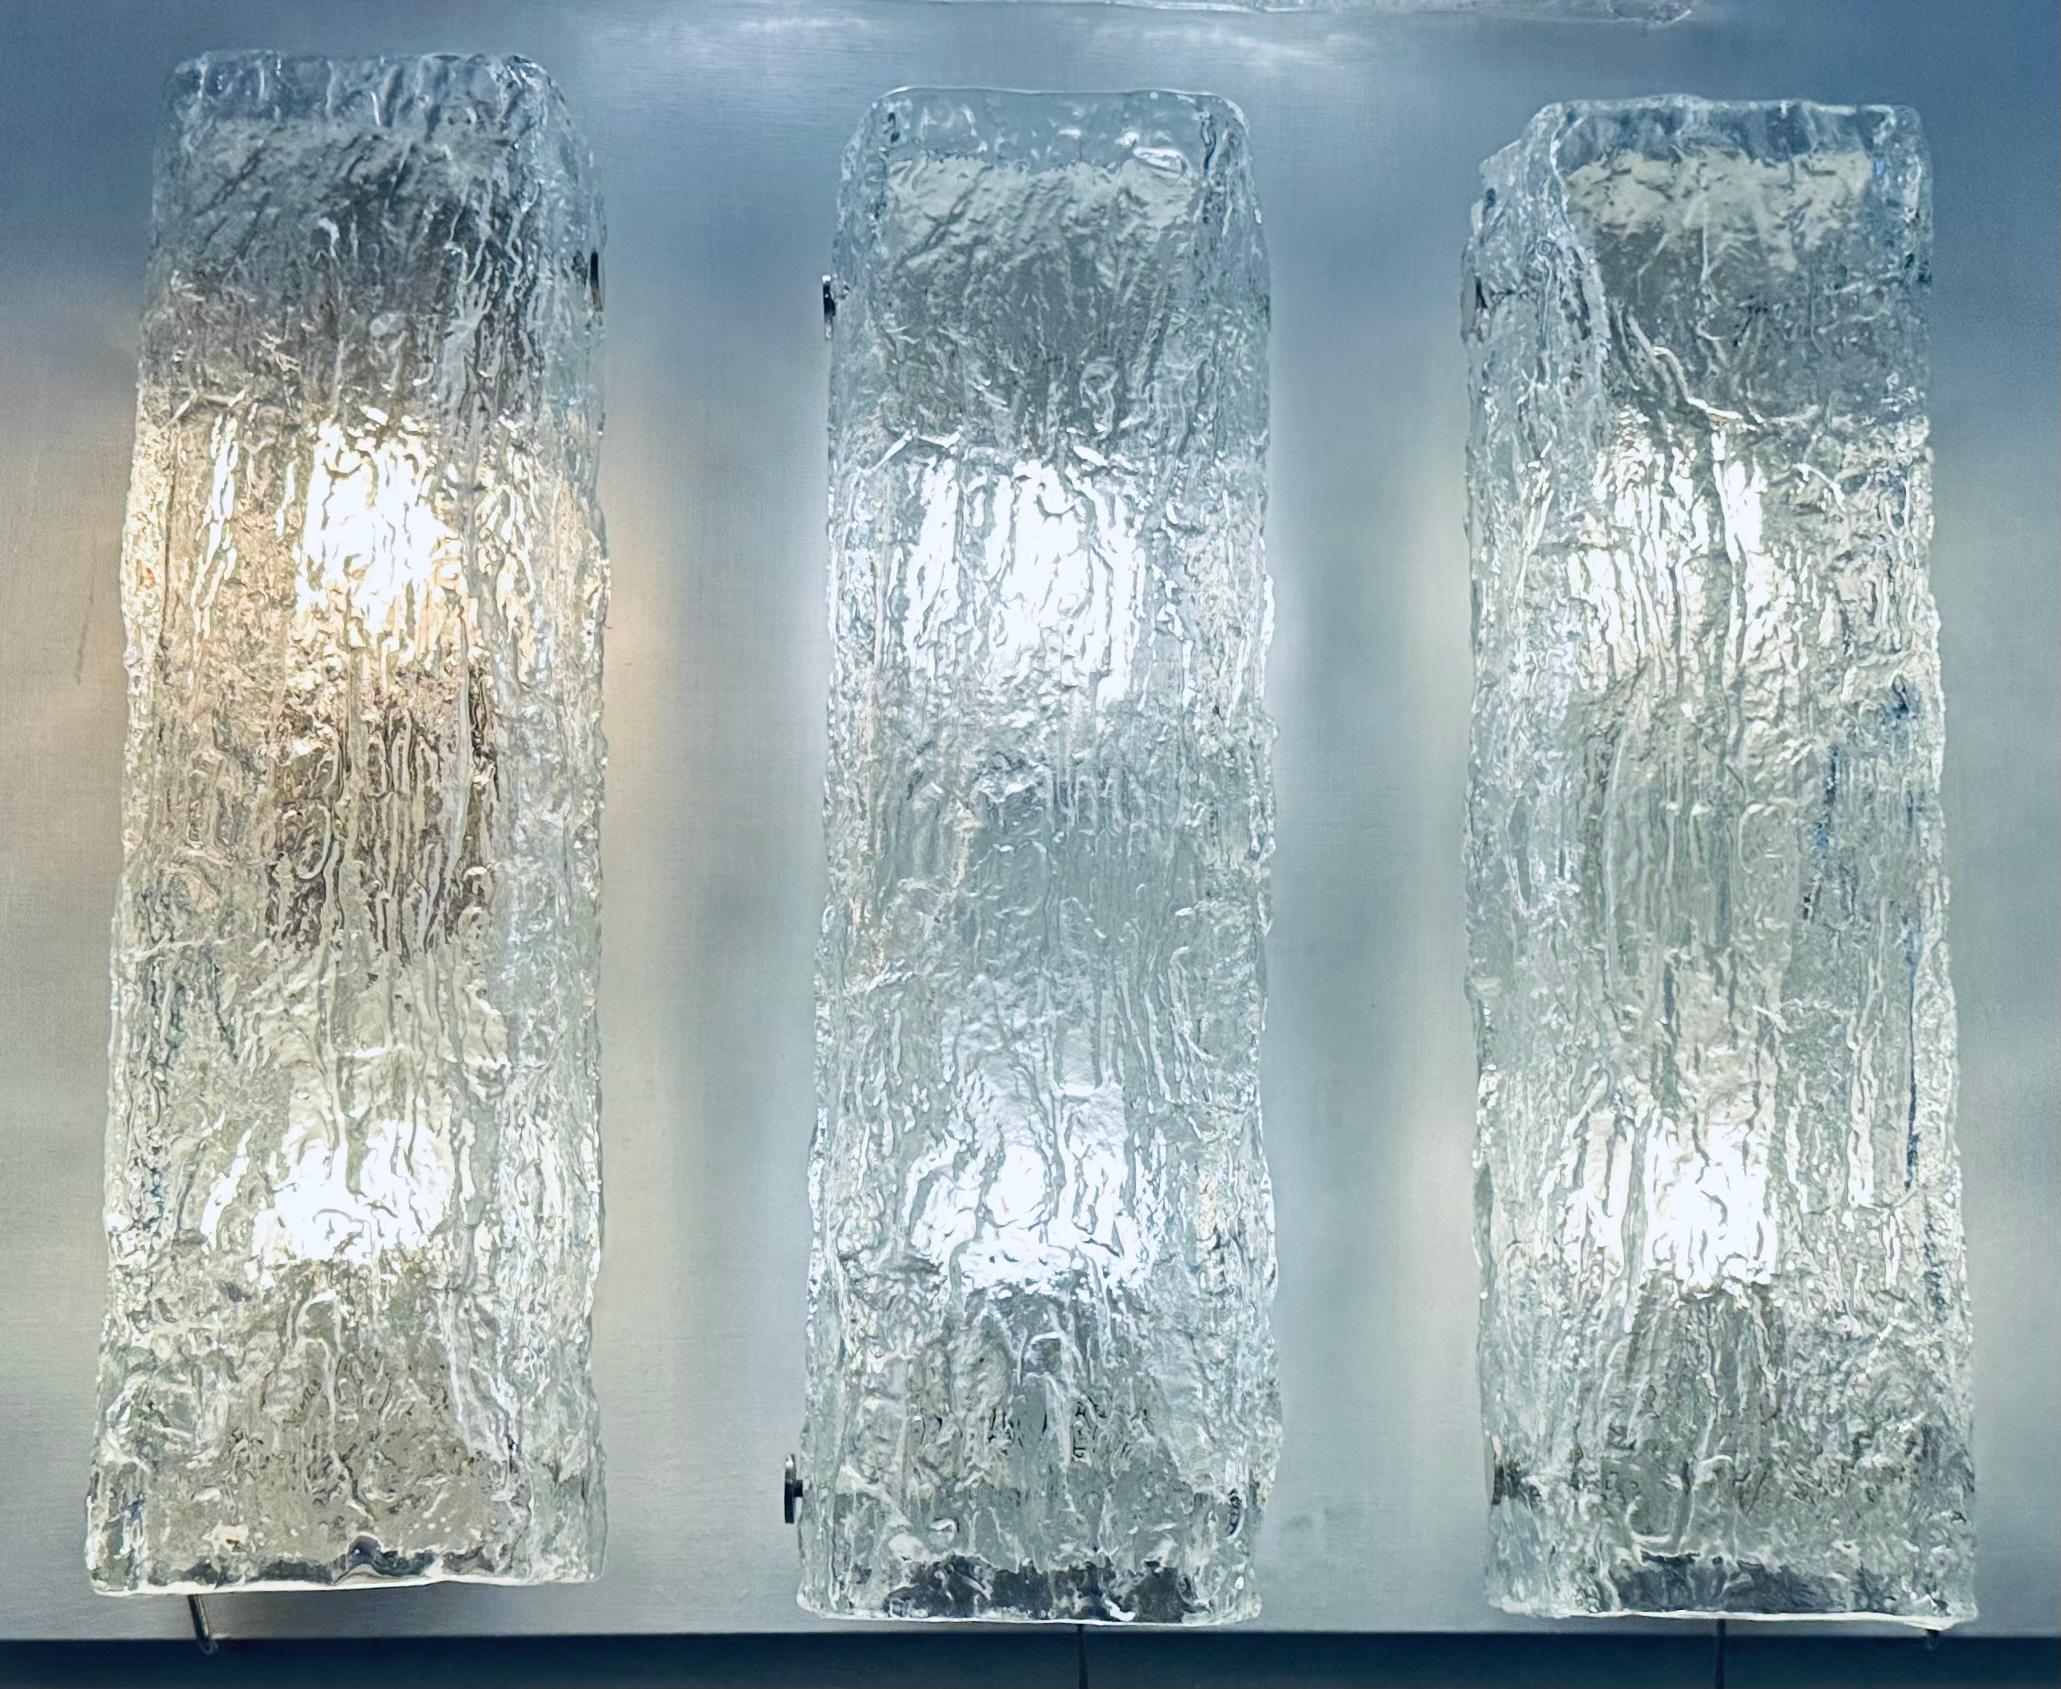 Un ensemble de 3 (prix individuels) appliques murales en verre glacé des années 1970 fabriquées par le fabricant allemand de luminaires haut de gamme Kaiser Leuchten. Le verre texturé épais rectangulaire se visse sur un cadre en métal laqué blanc